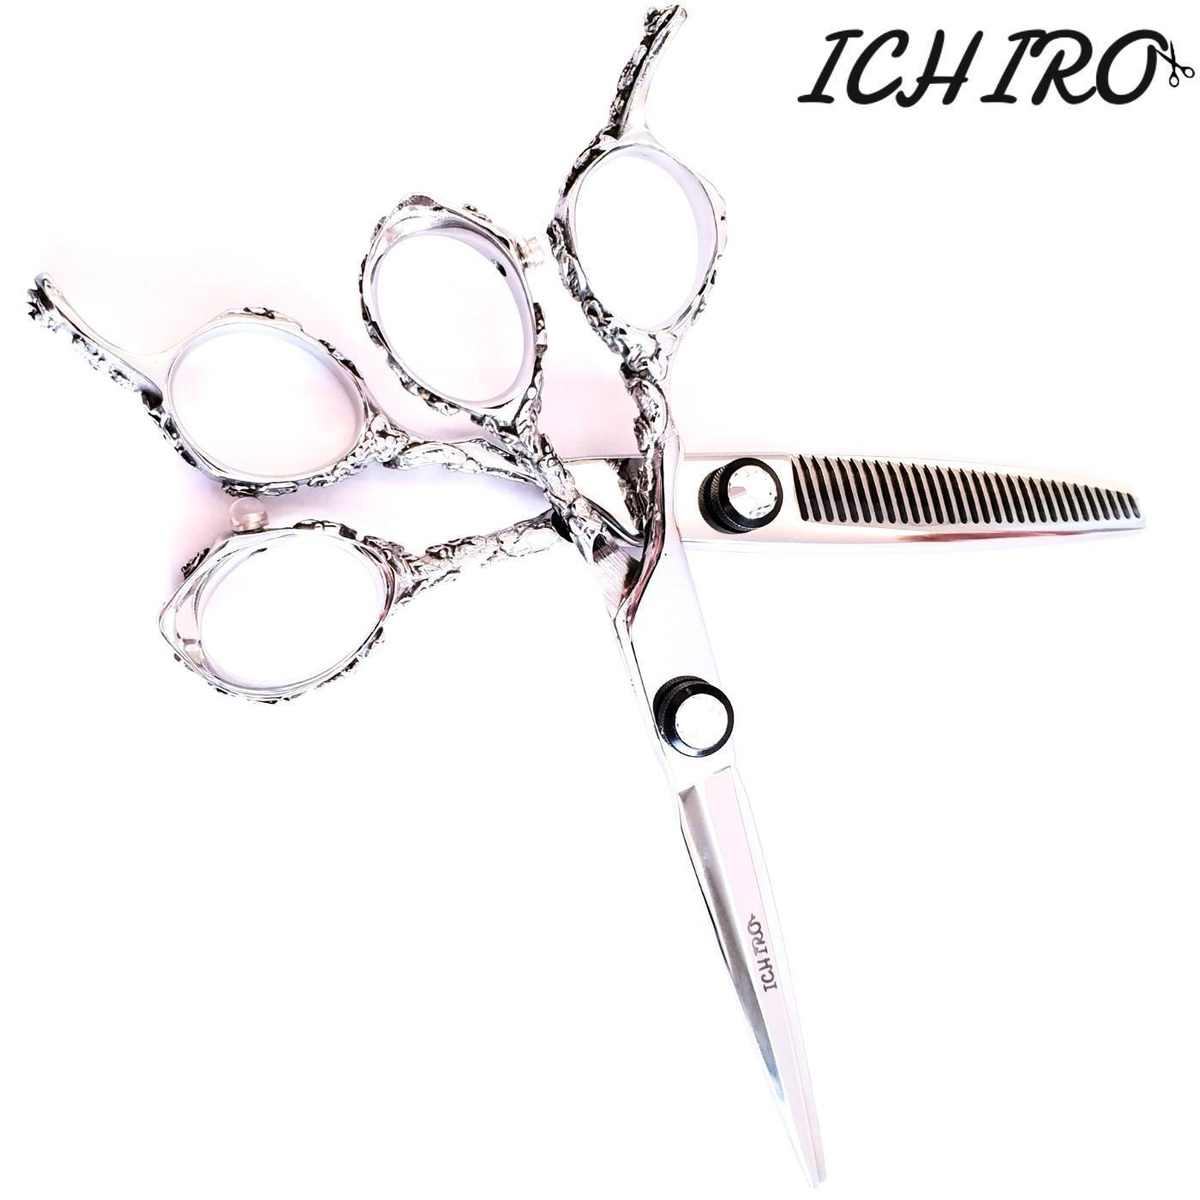 Ichiro Shears - Japan Scissors USA